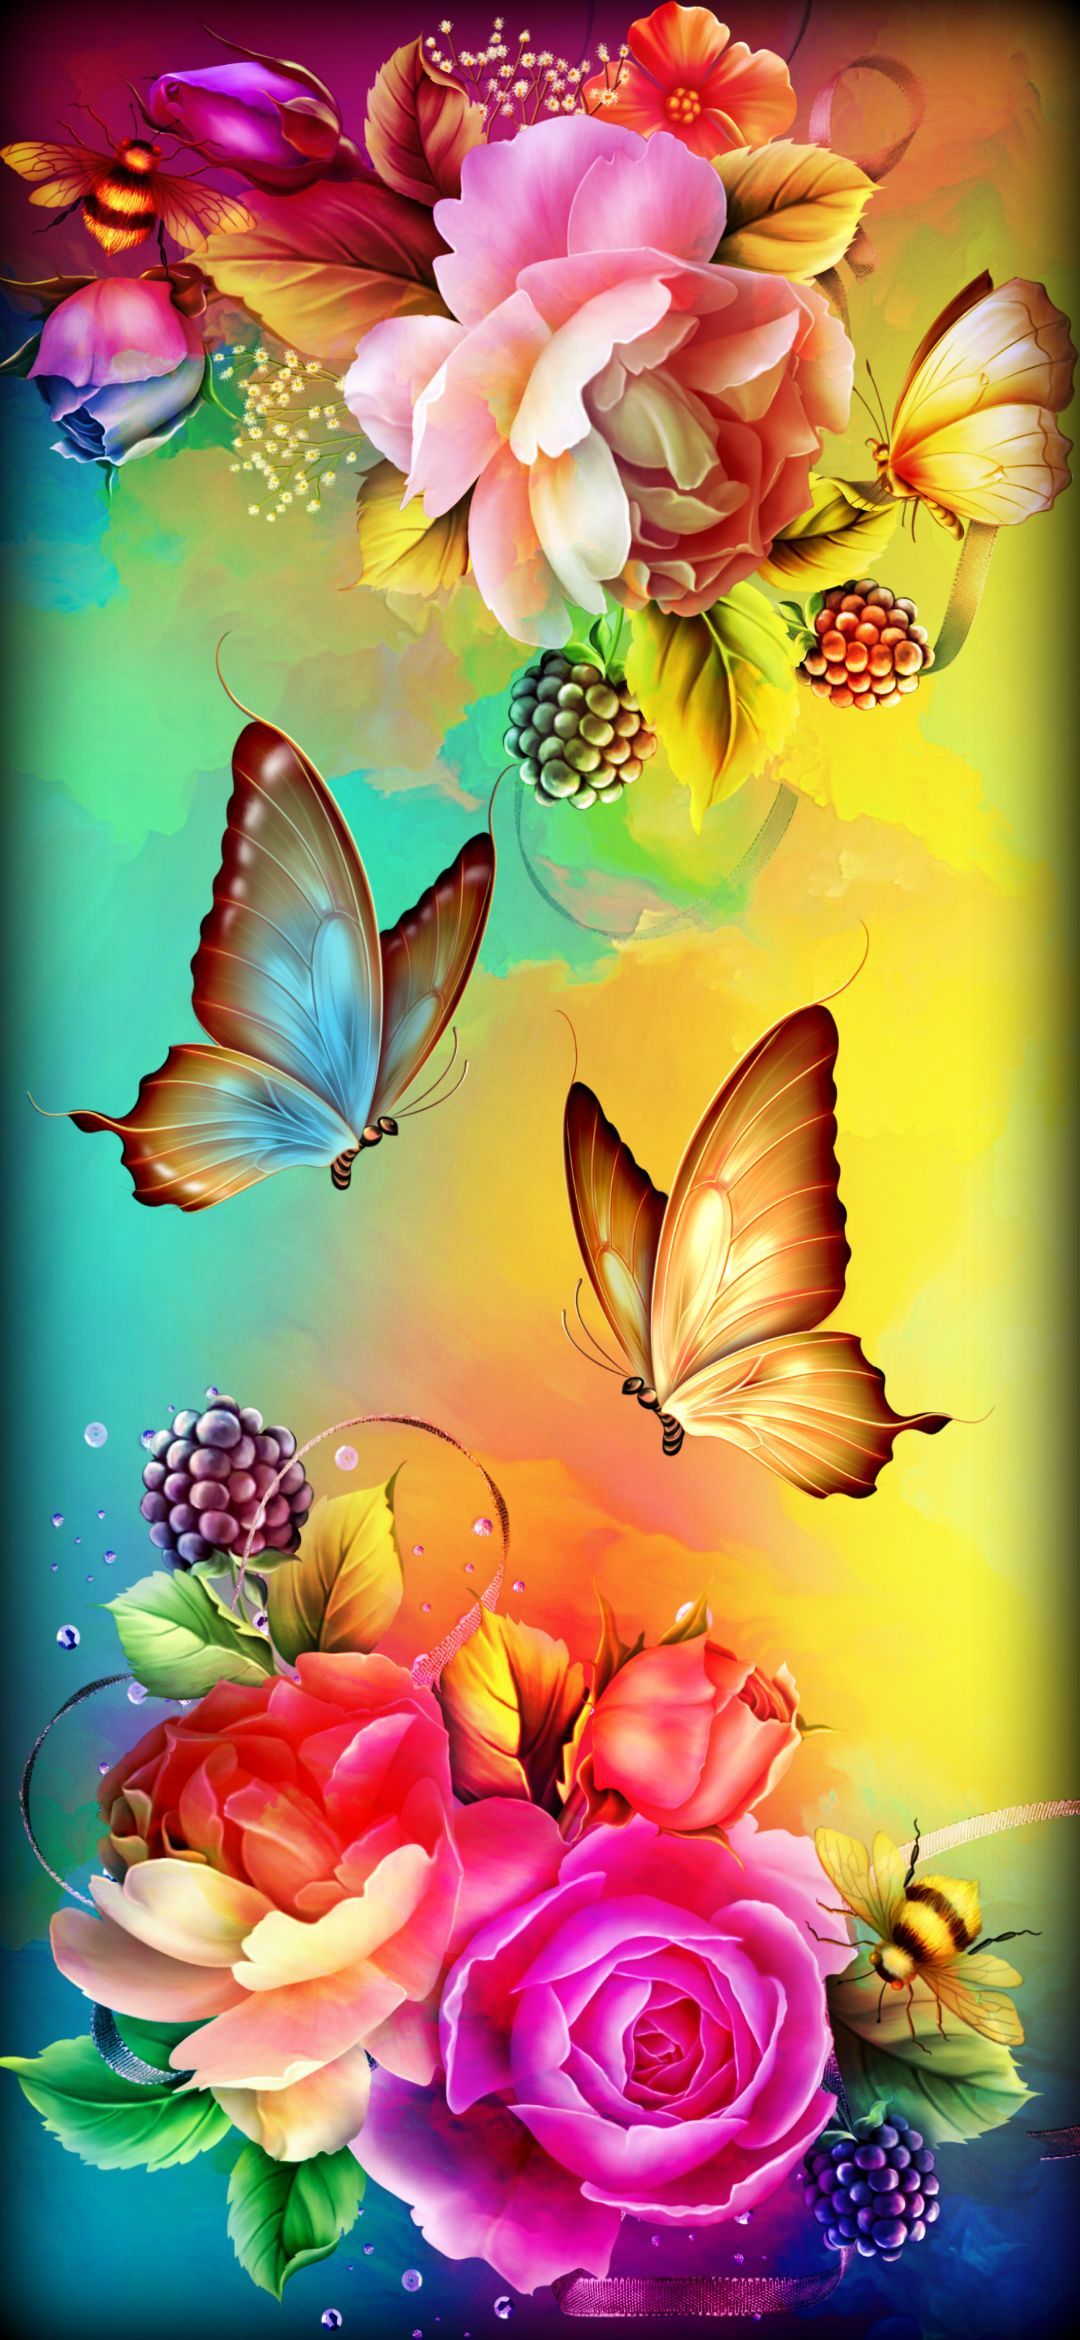 Beautiful Flowers and Butterflies Wallpaper Free Beautiful Flowers and Butterflies Background